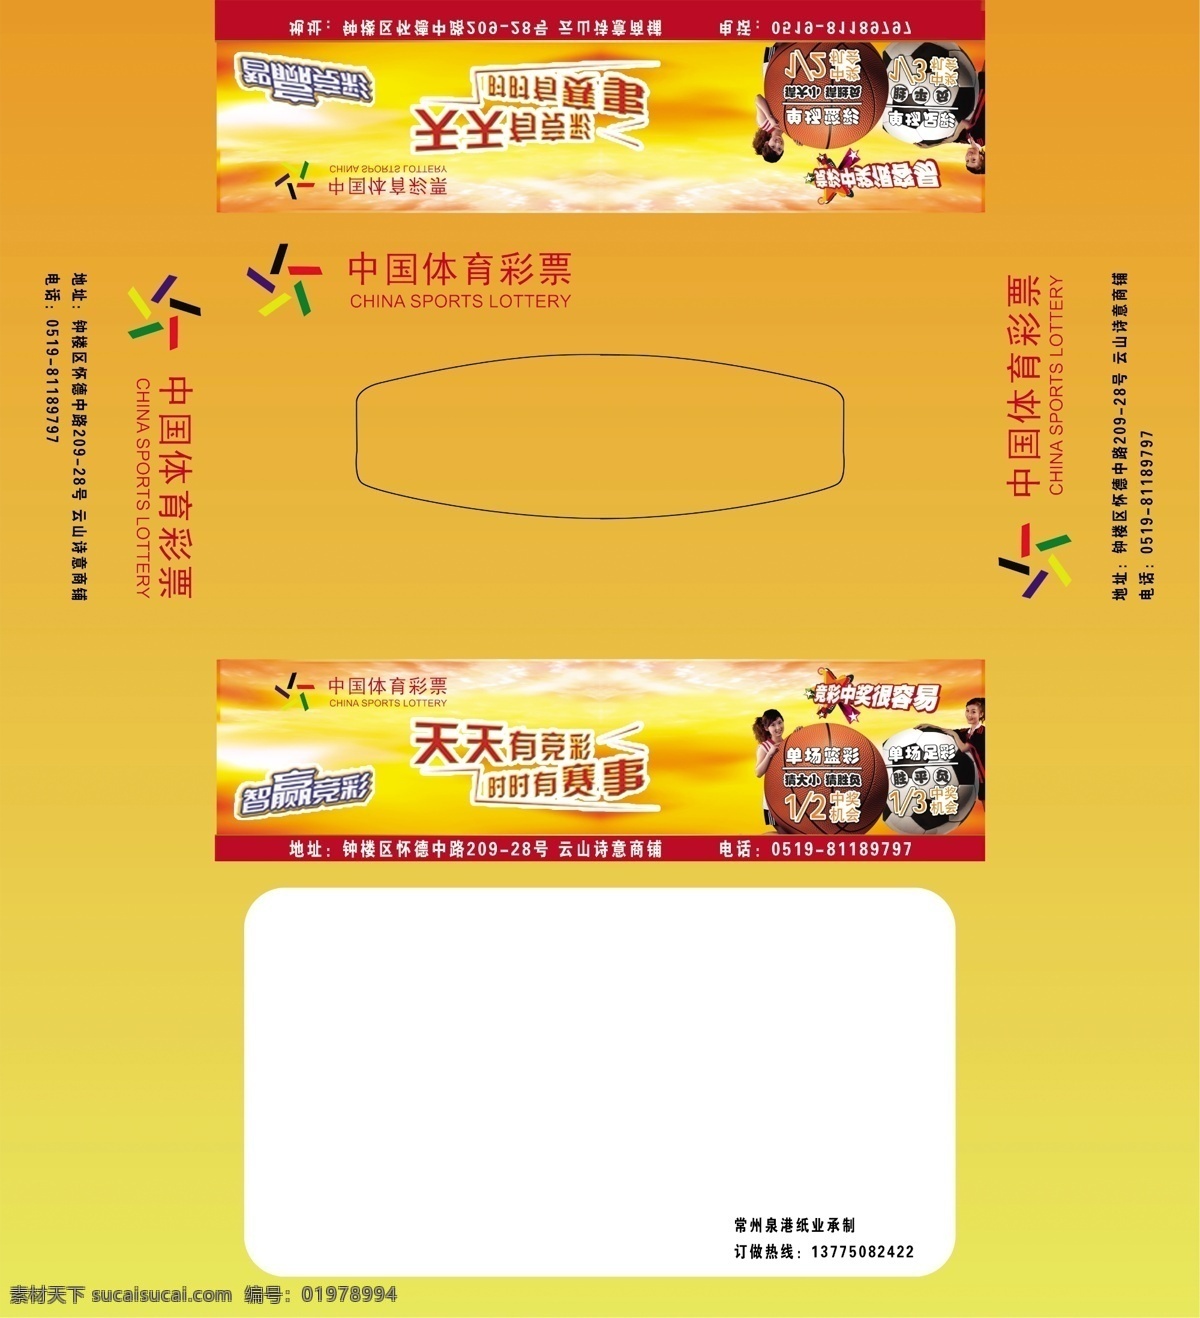 中国 体育彩票 纸巾 盒 包装设计 彩票 广告设计模板 源文件 纸巾盒 中国体育彩票 psd源文件